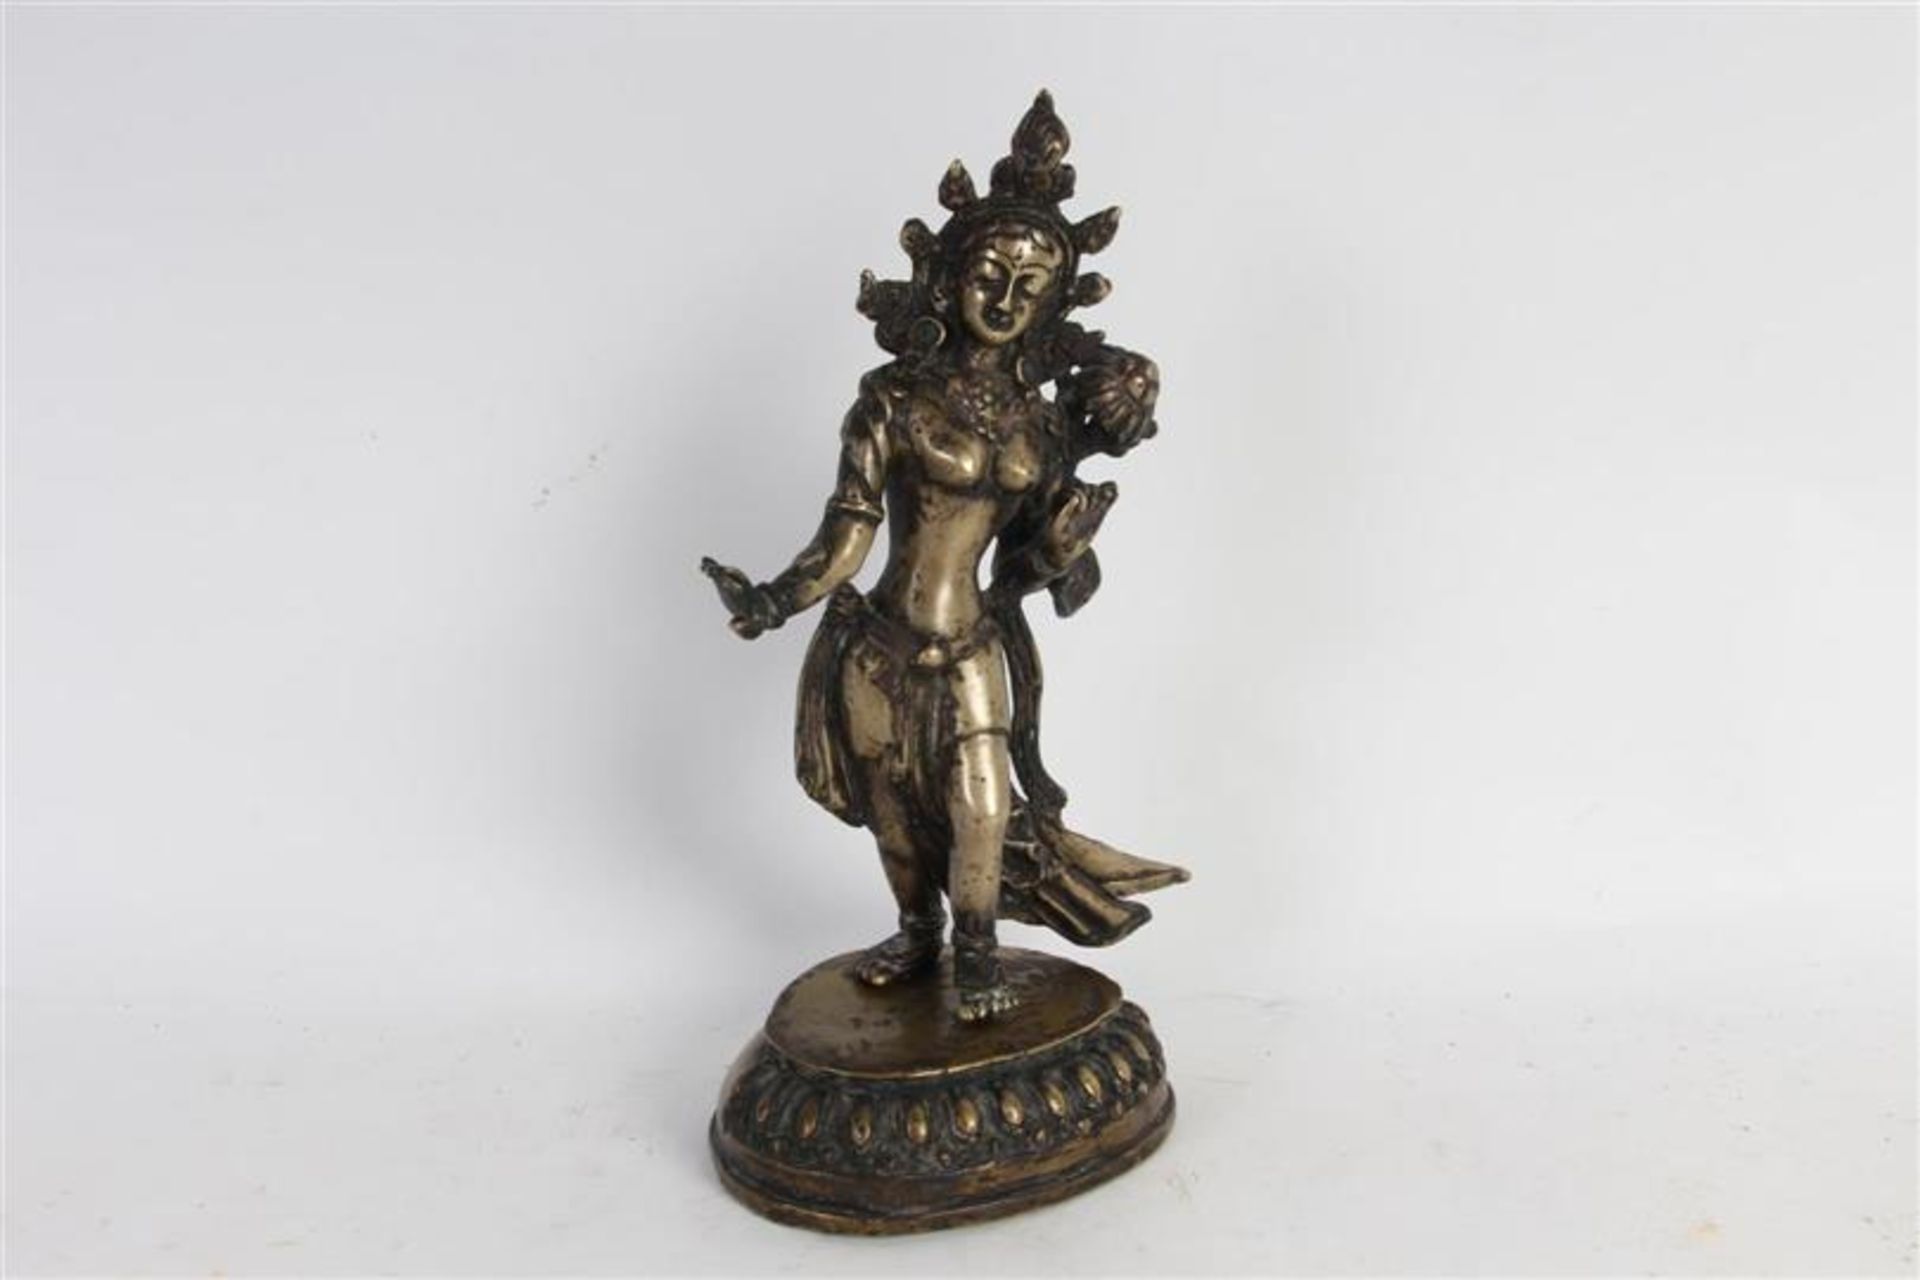 Brons met zilveren Boeddha, vroeg 20e eeuw met defect. H: 24 cm. - Bild 2 aus 9